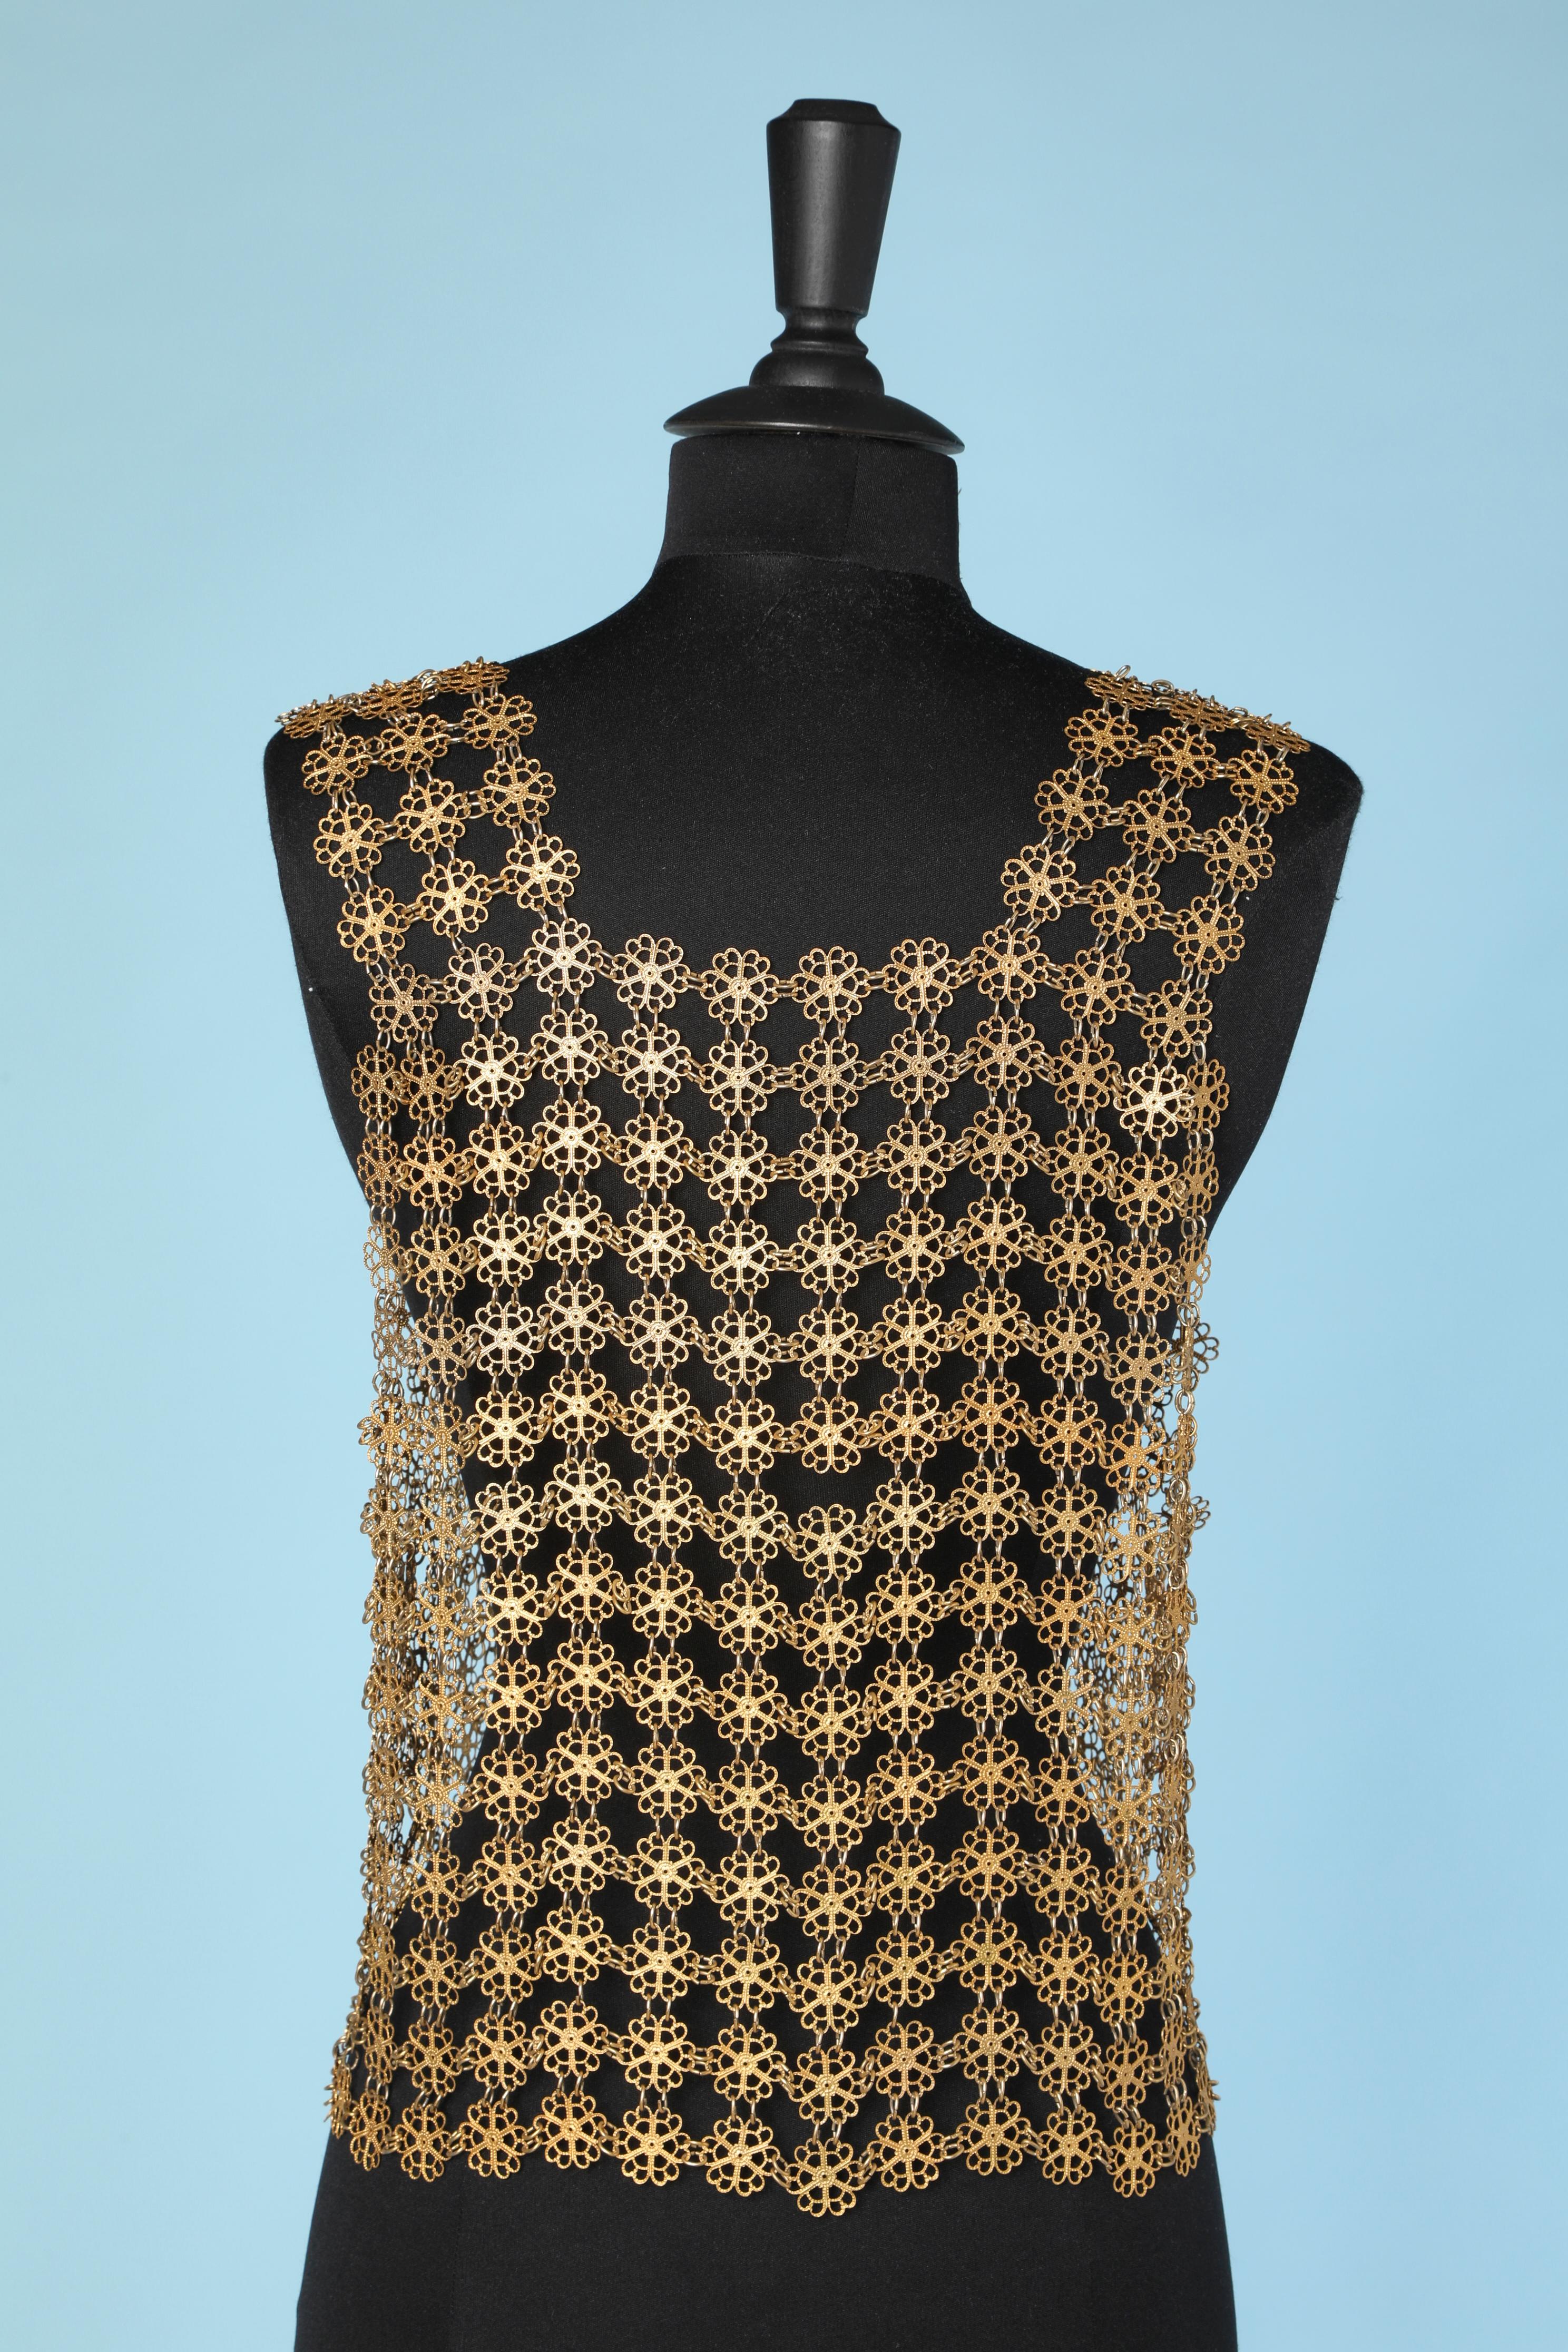 Women's 1970's Gold metallic vest in flowers pattern 